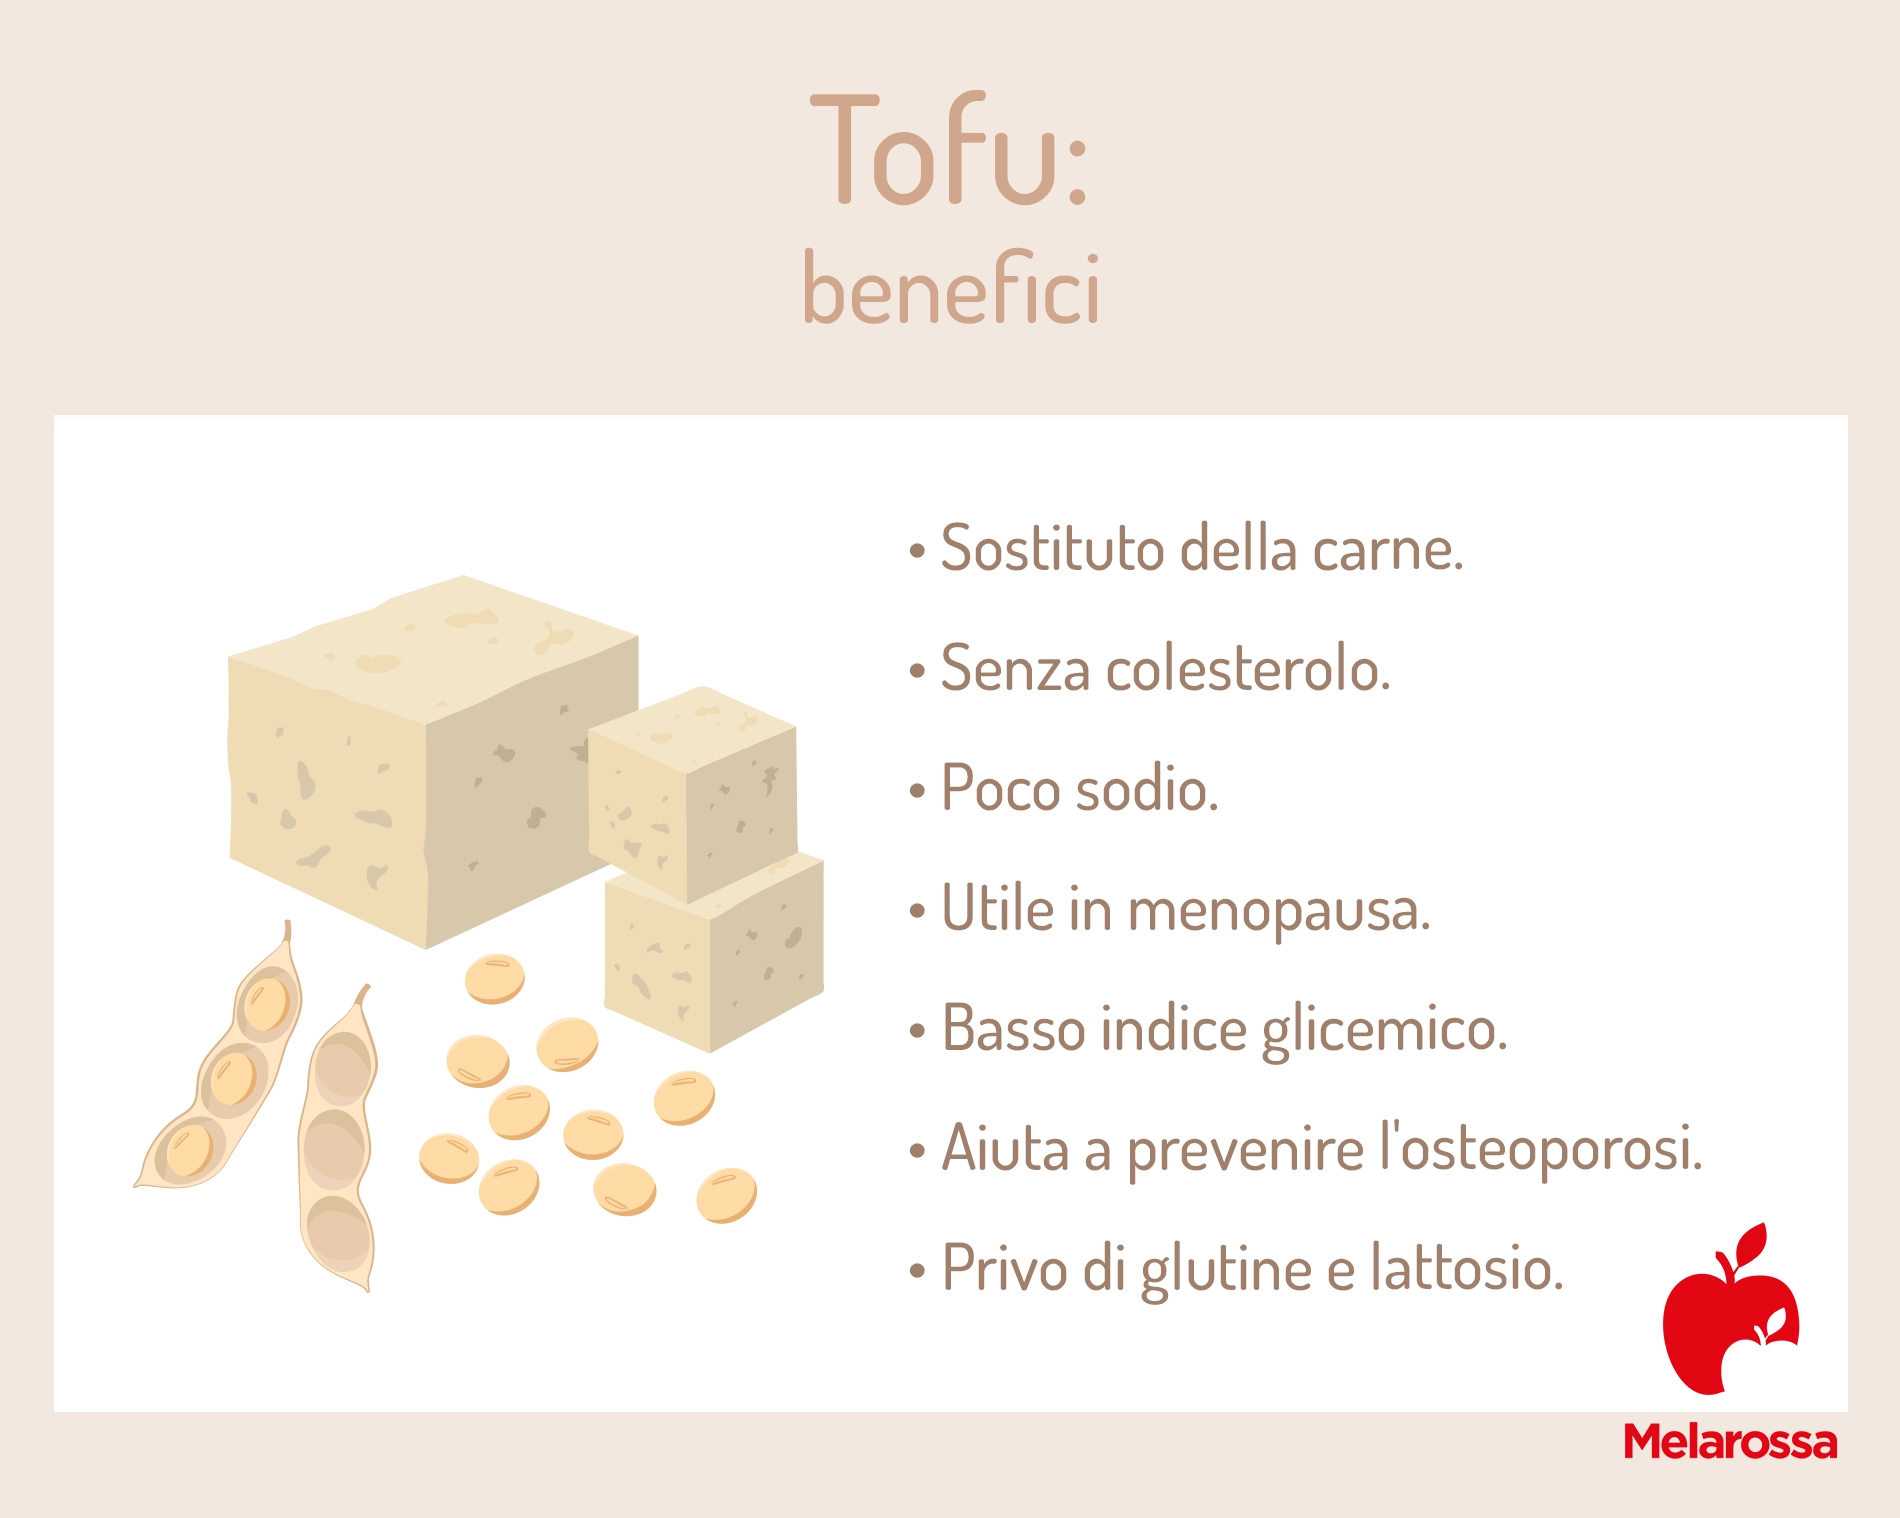 tofu: i benefici